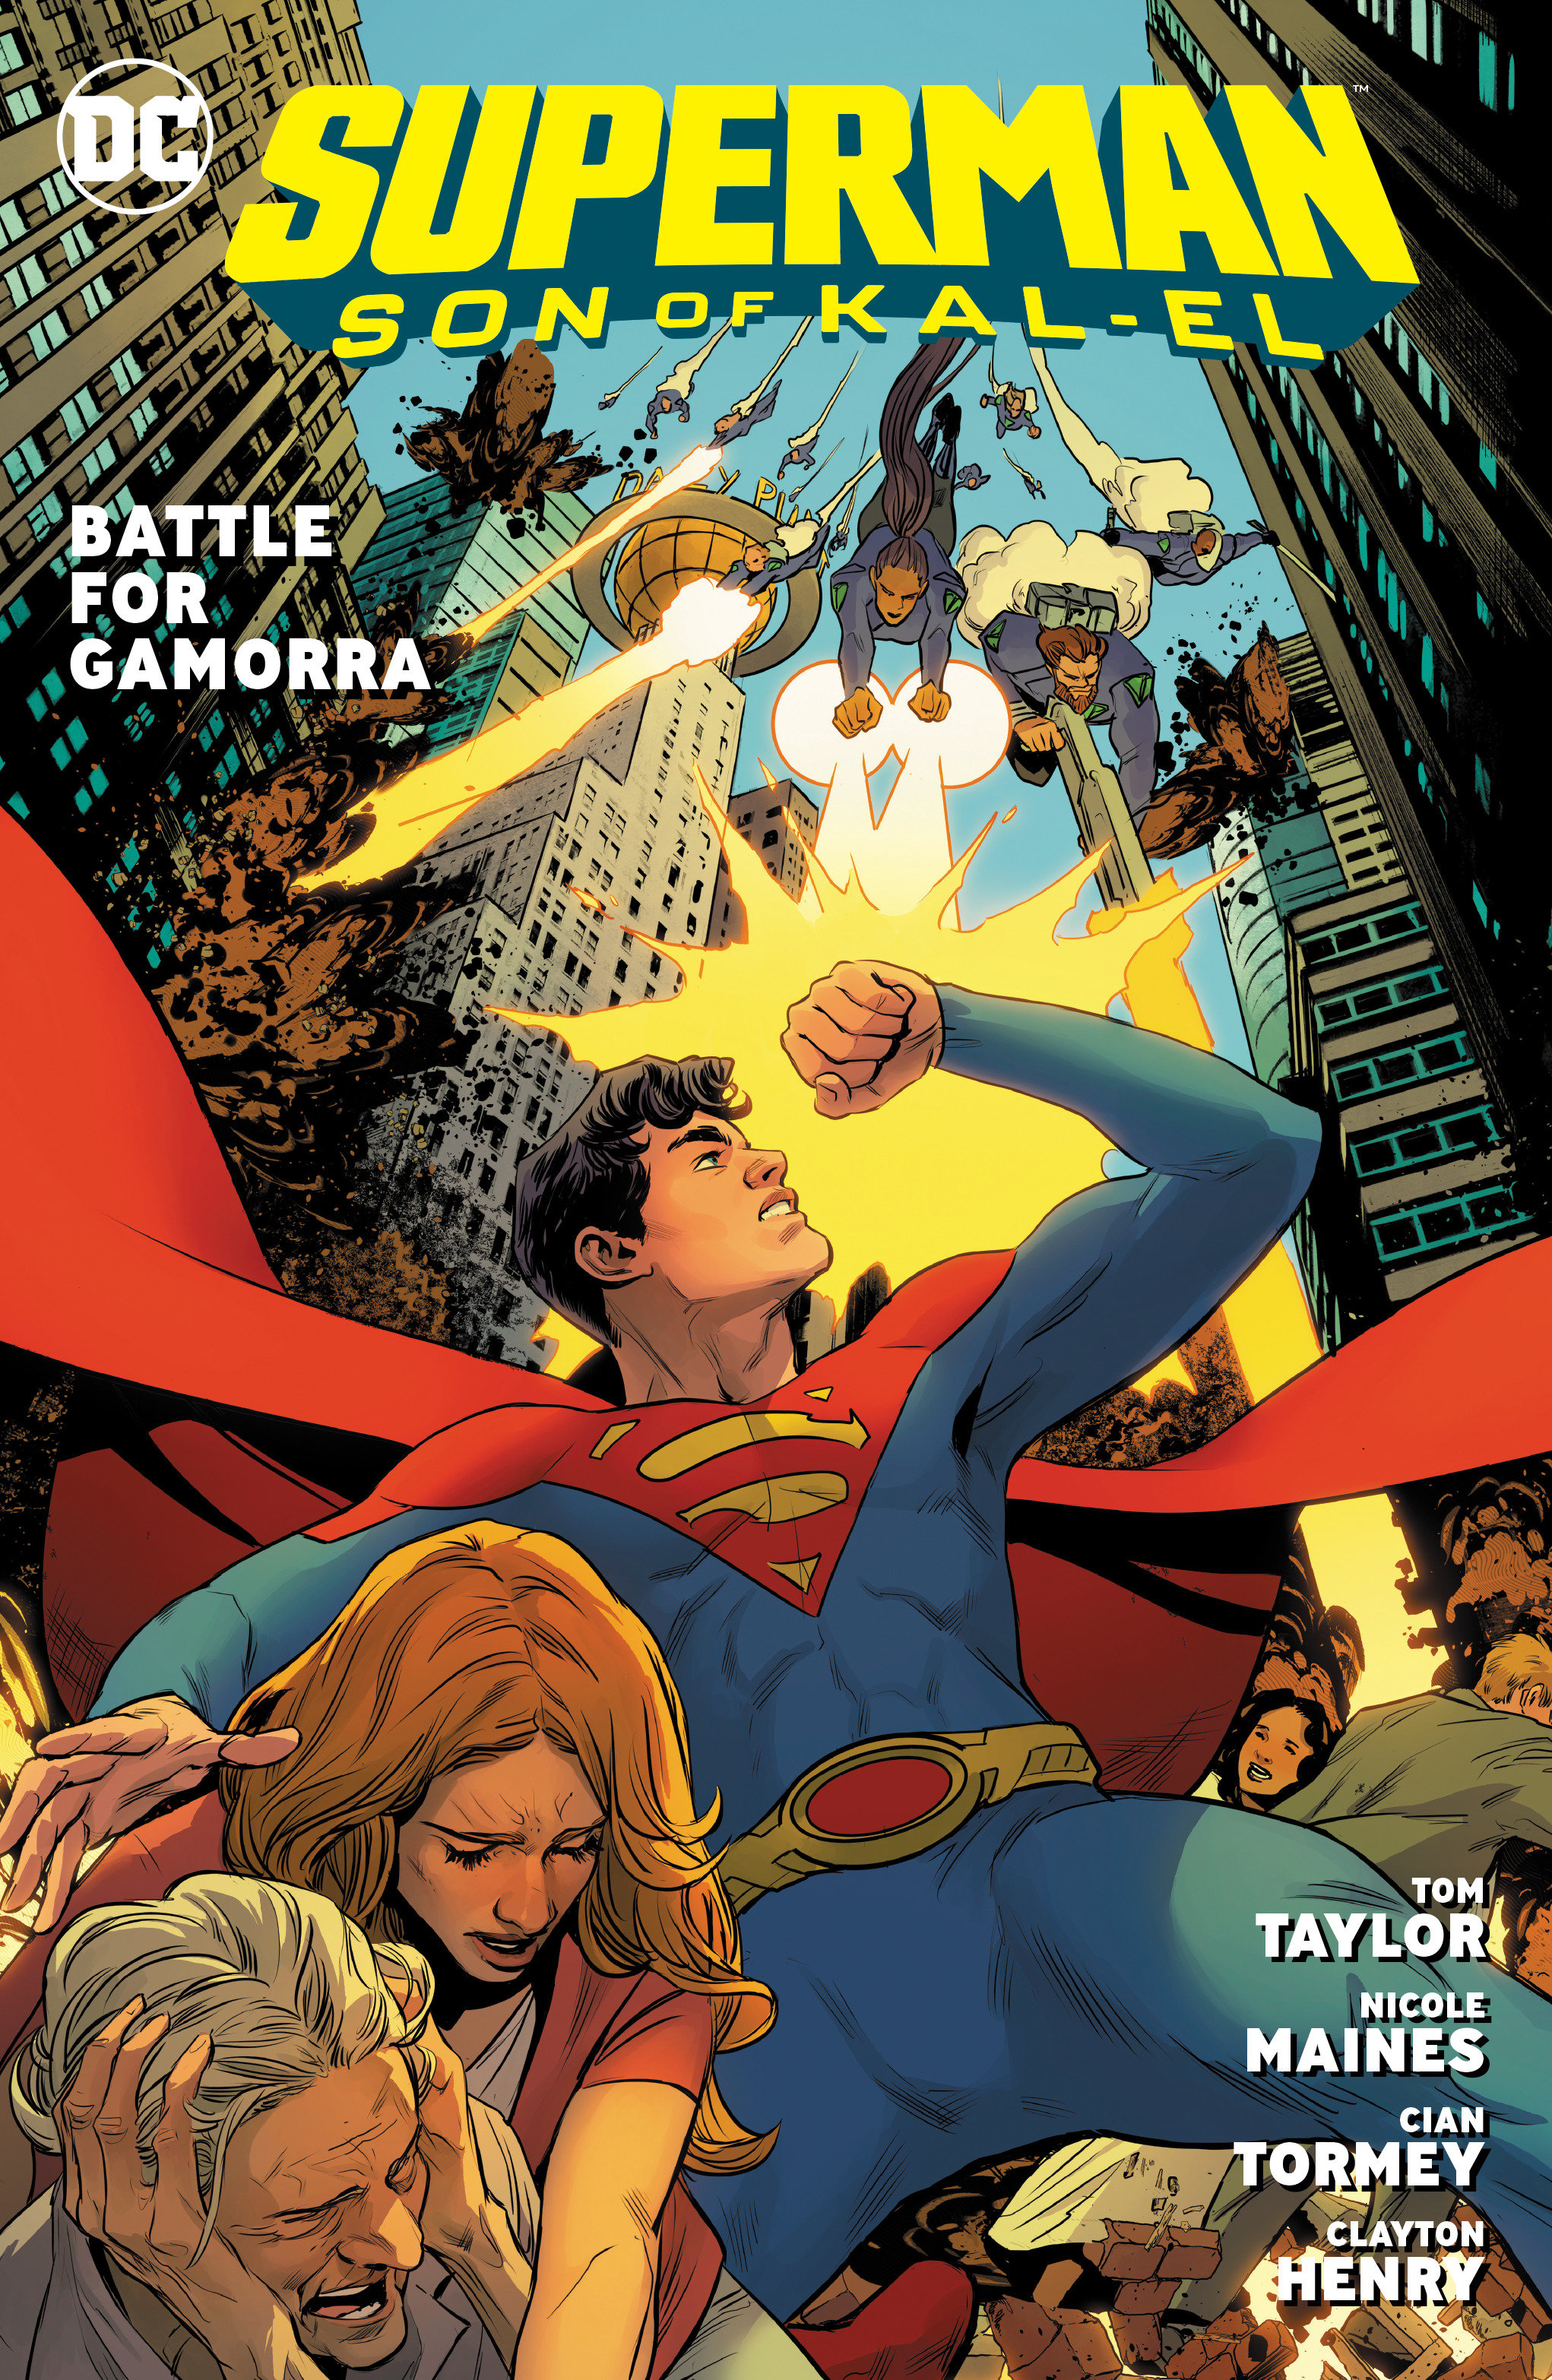 Superman Son of Kal-El Hardcover Volume 3 Battle For Gamorra